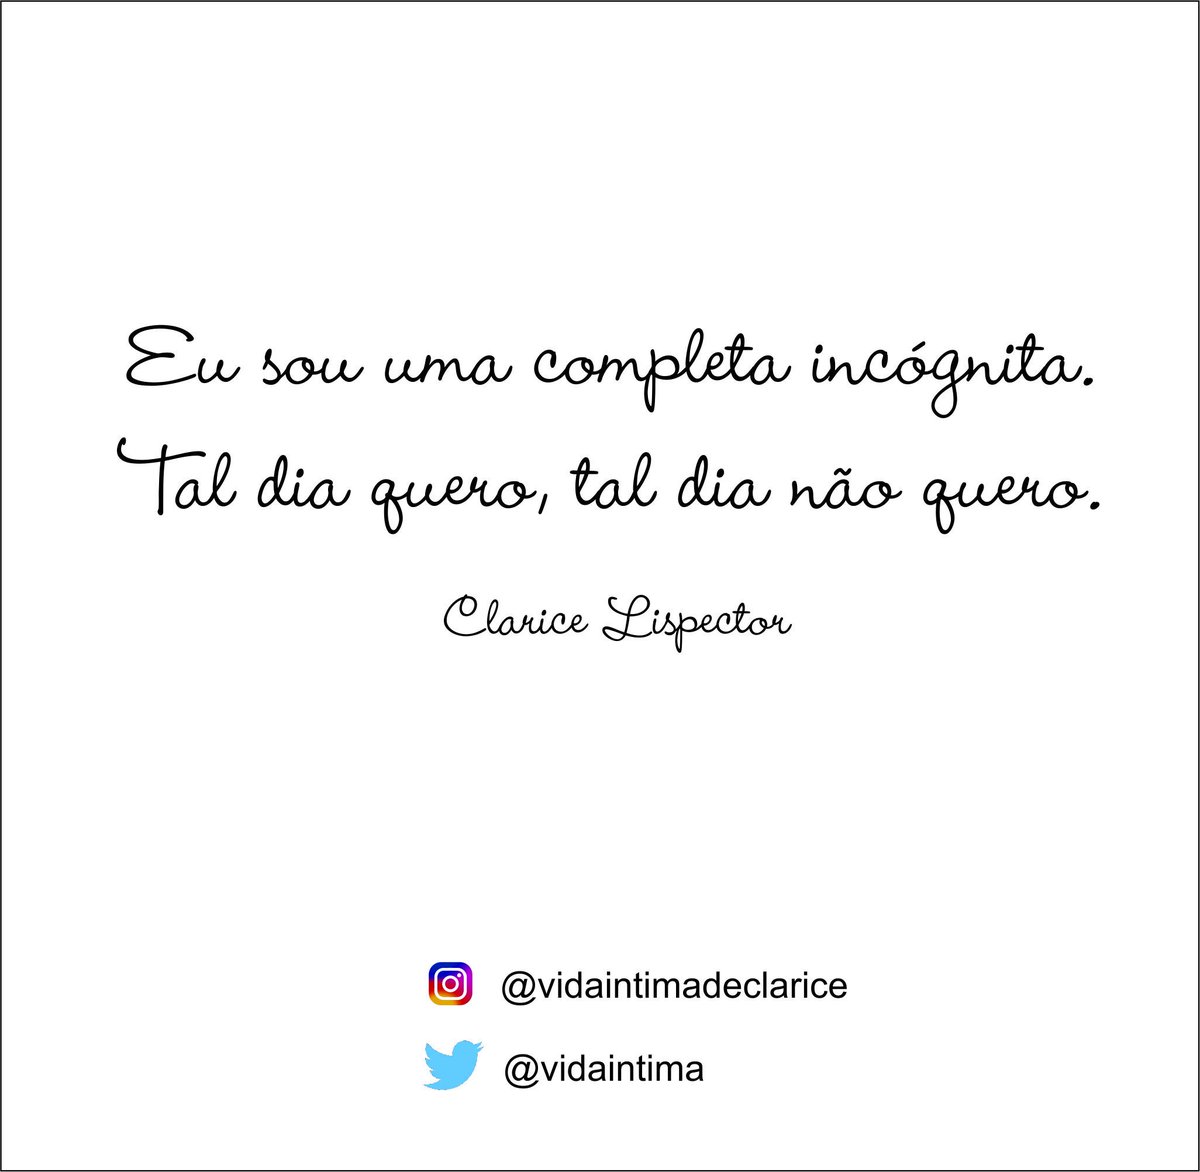 Clarice Lispector (@vidaintima) / Twitter